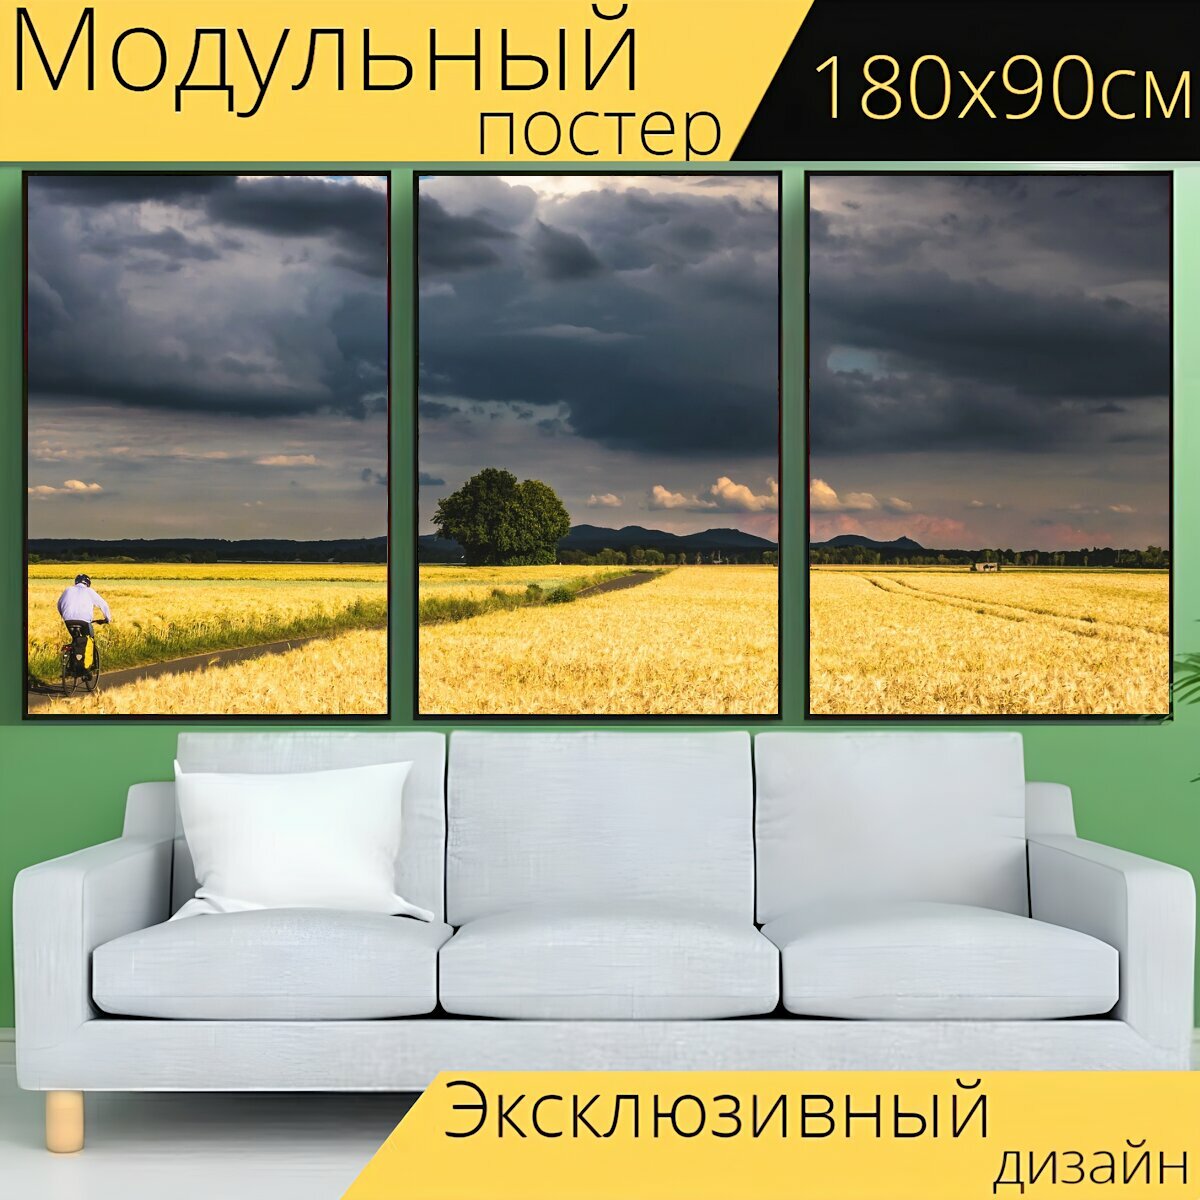 Модульный постер "Буря, гроза, облака" 180 x 90 см. для интерьера